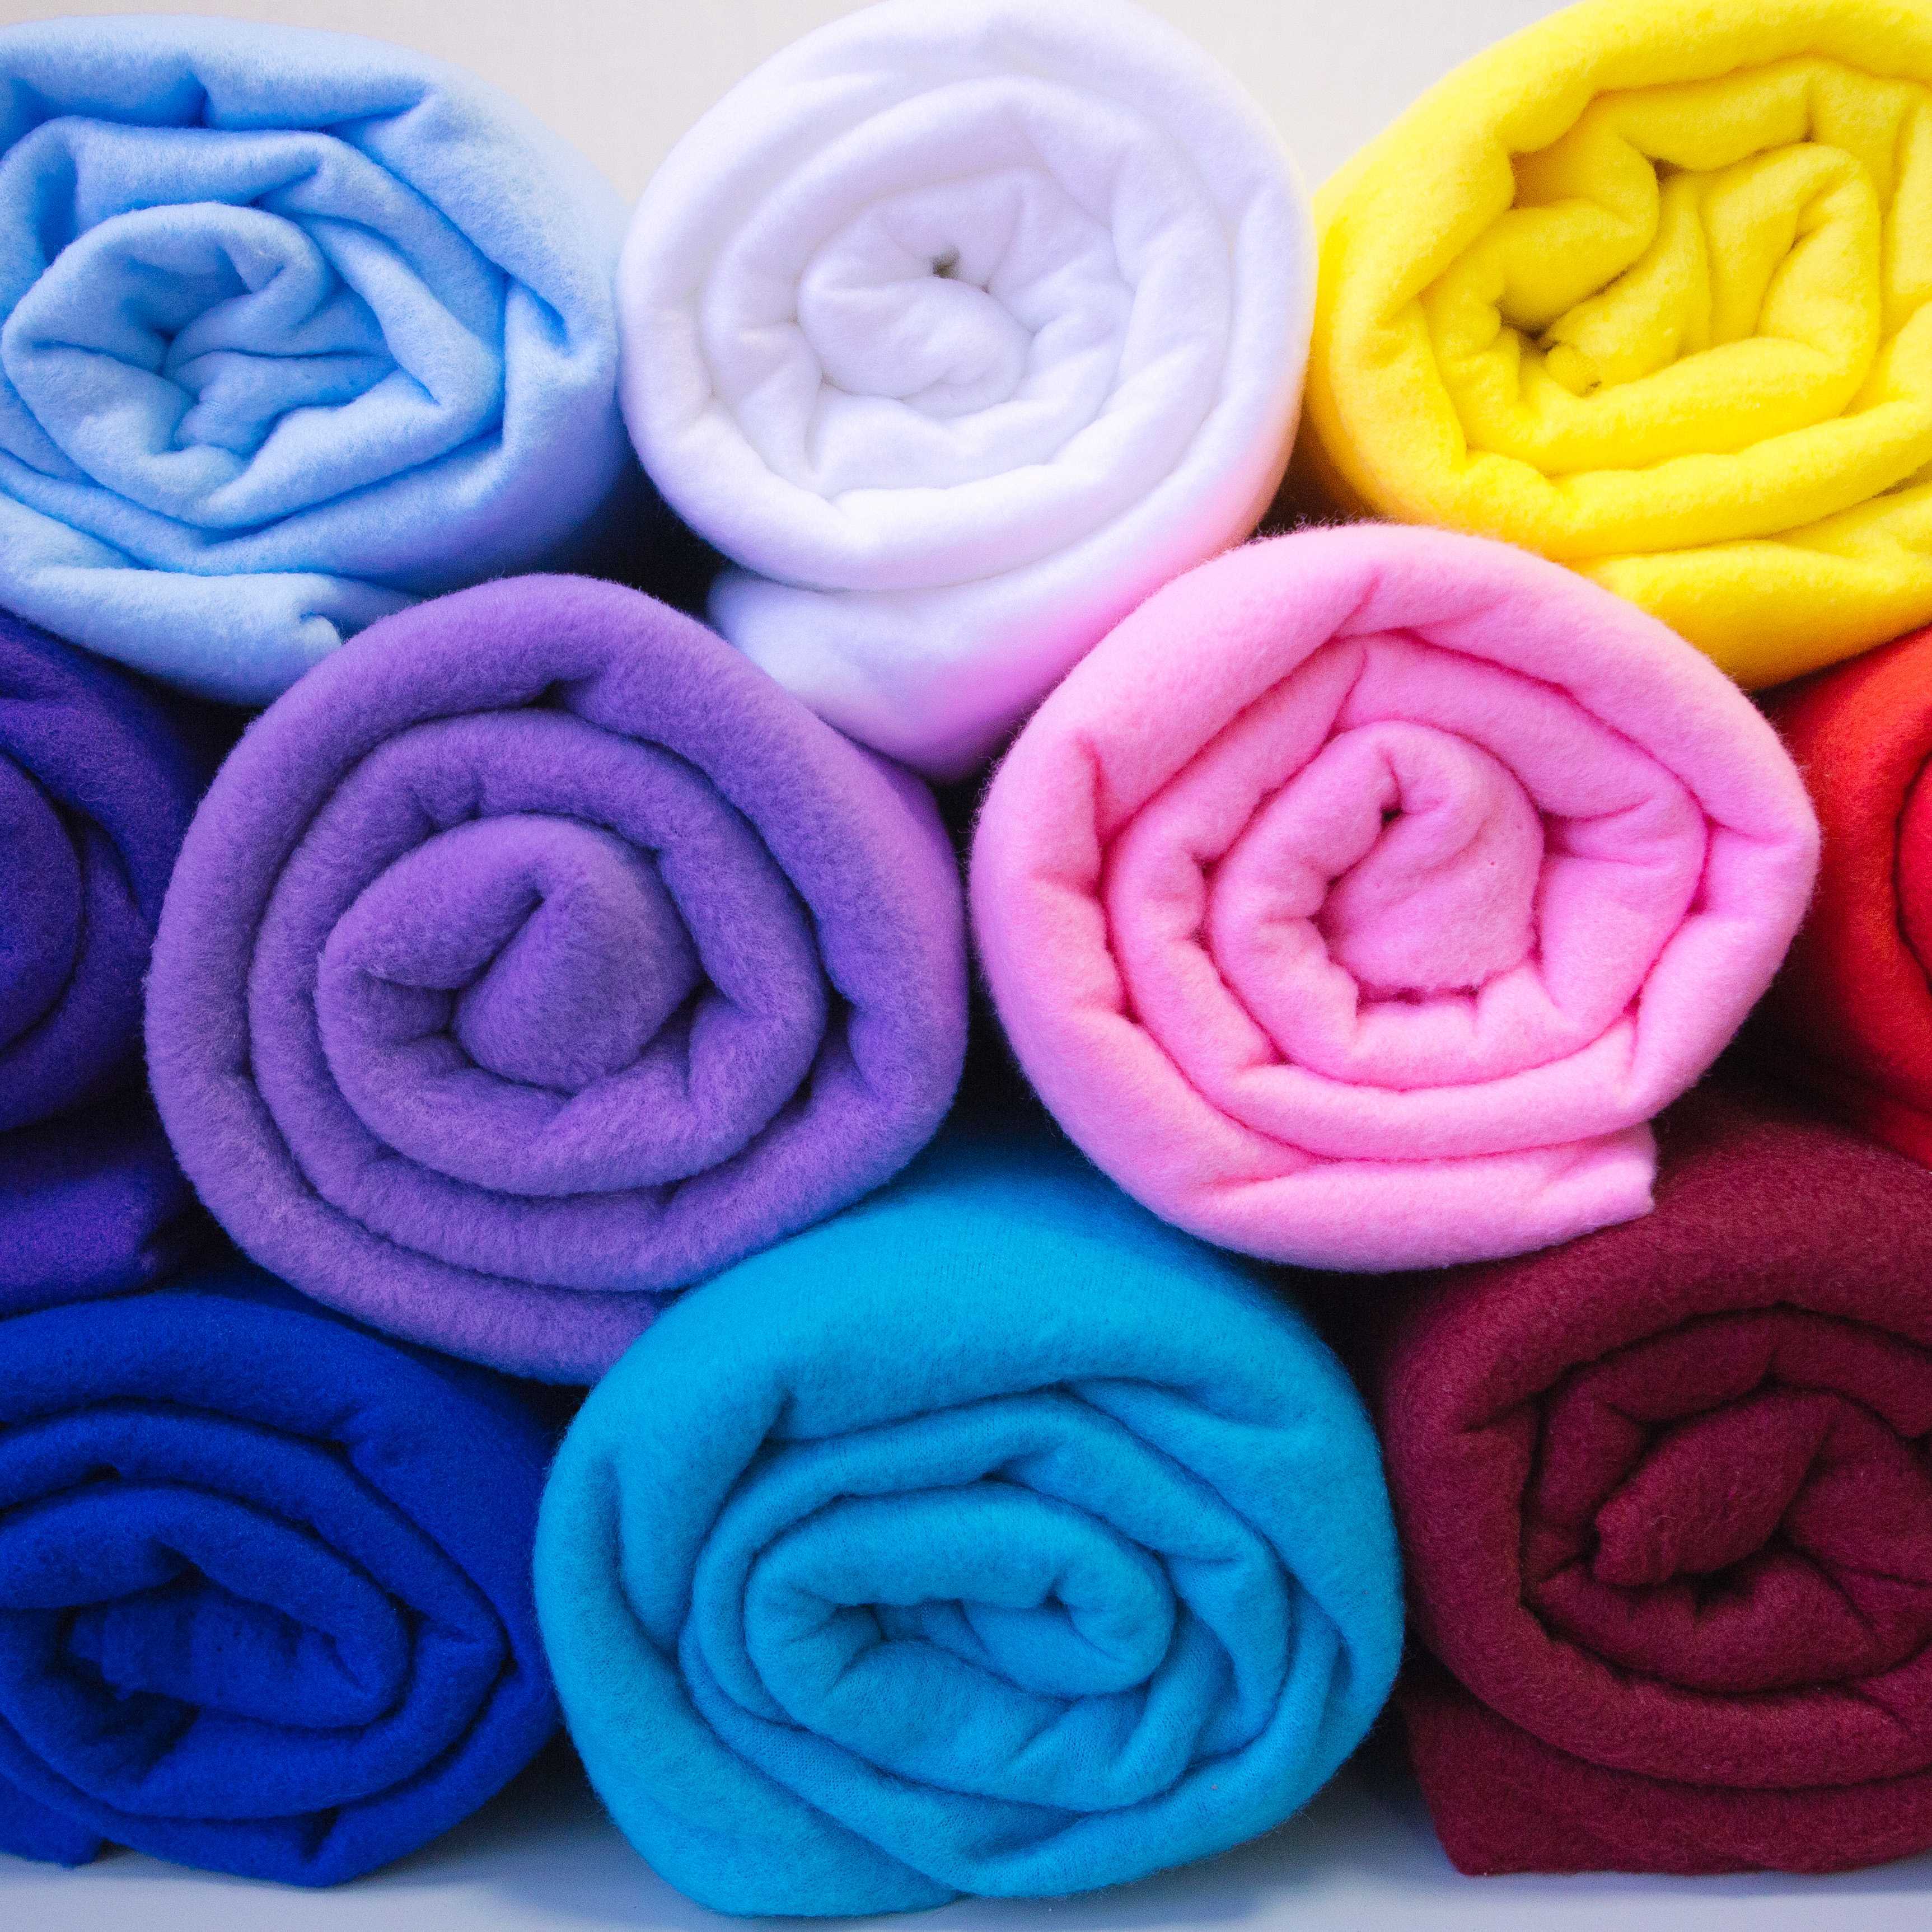 Флис — синтетическое трикотажное полотно из полиэстера для изготовления теплой одежды